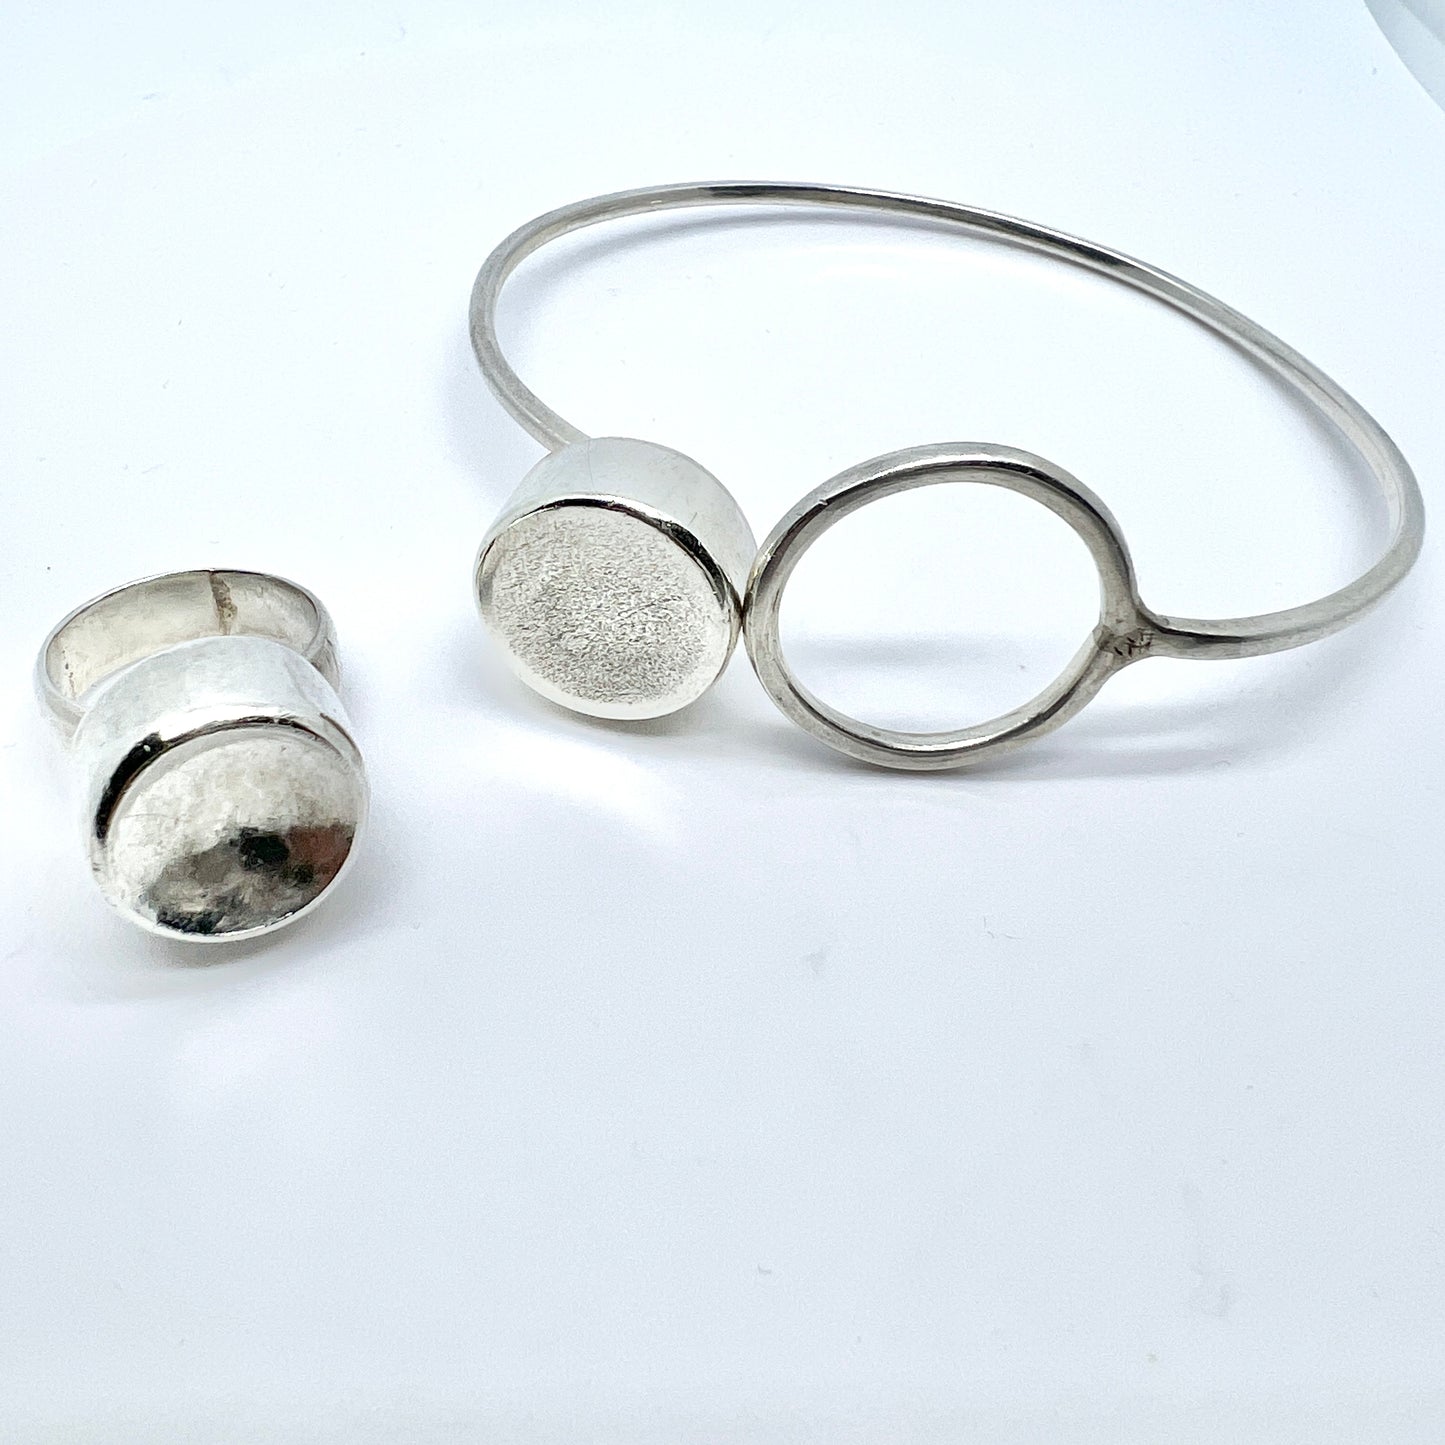 Asian, Vintage Modernist Sterling Silver Bracelet and Ring.